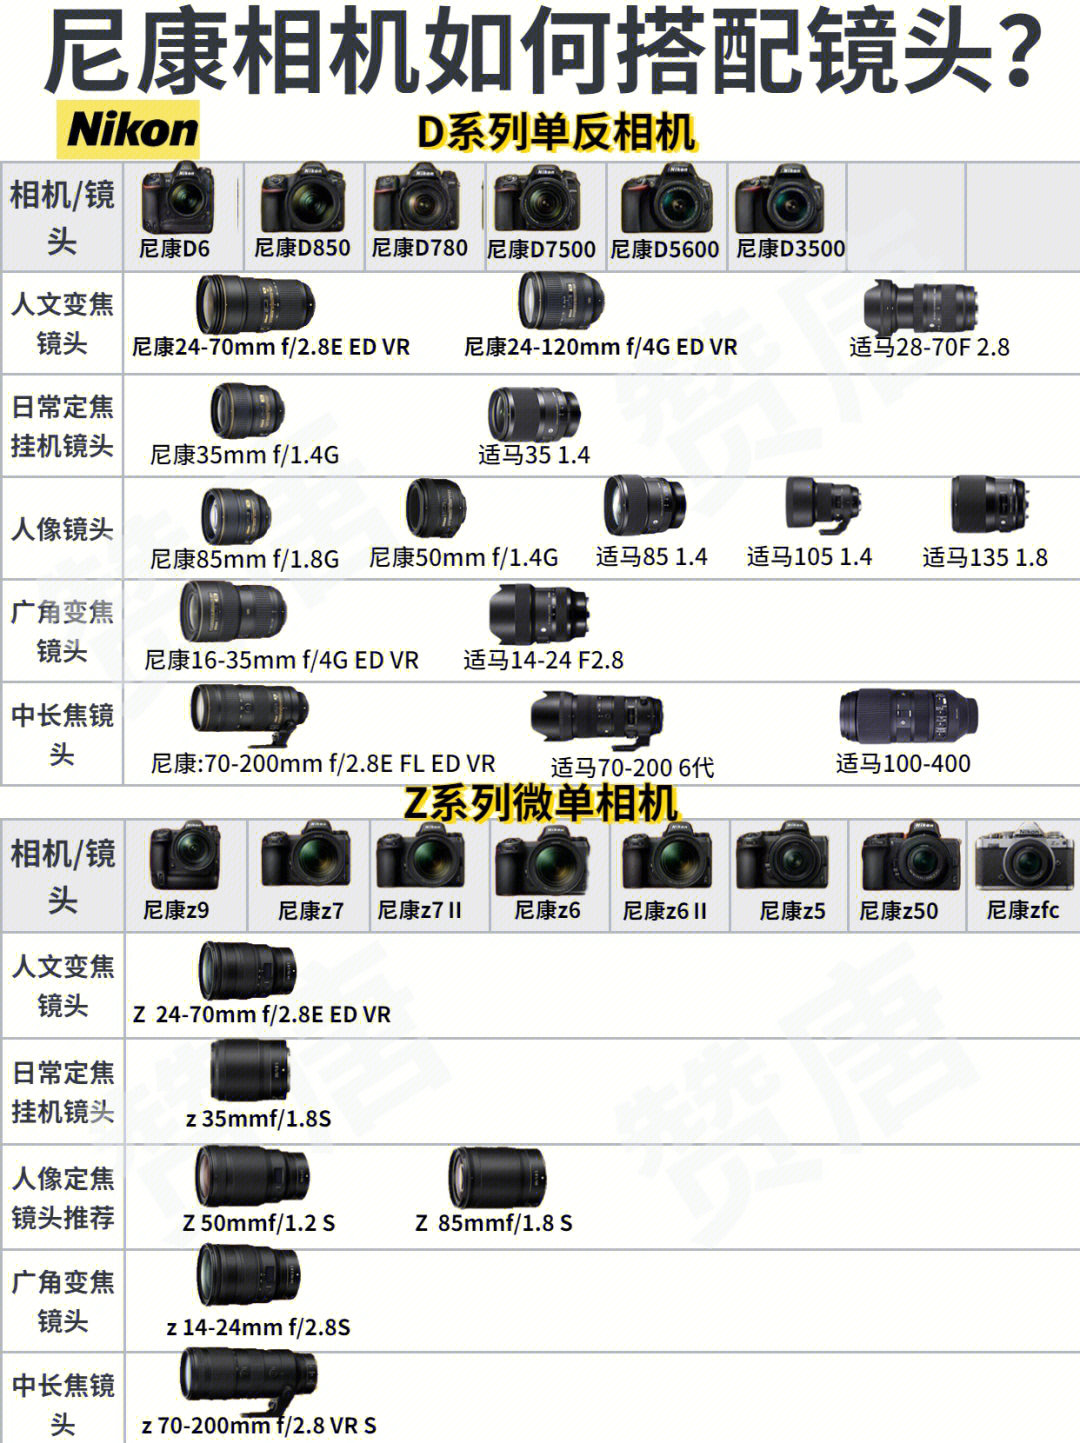 尼康爱好者都是这样搭配镜头的91相机全画幅微单相机: z9,z7Ⅱ,z6,z